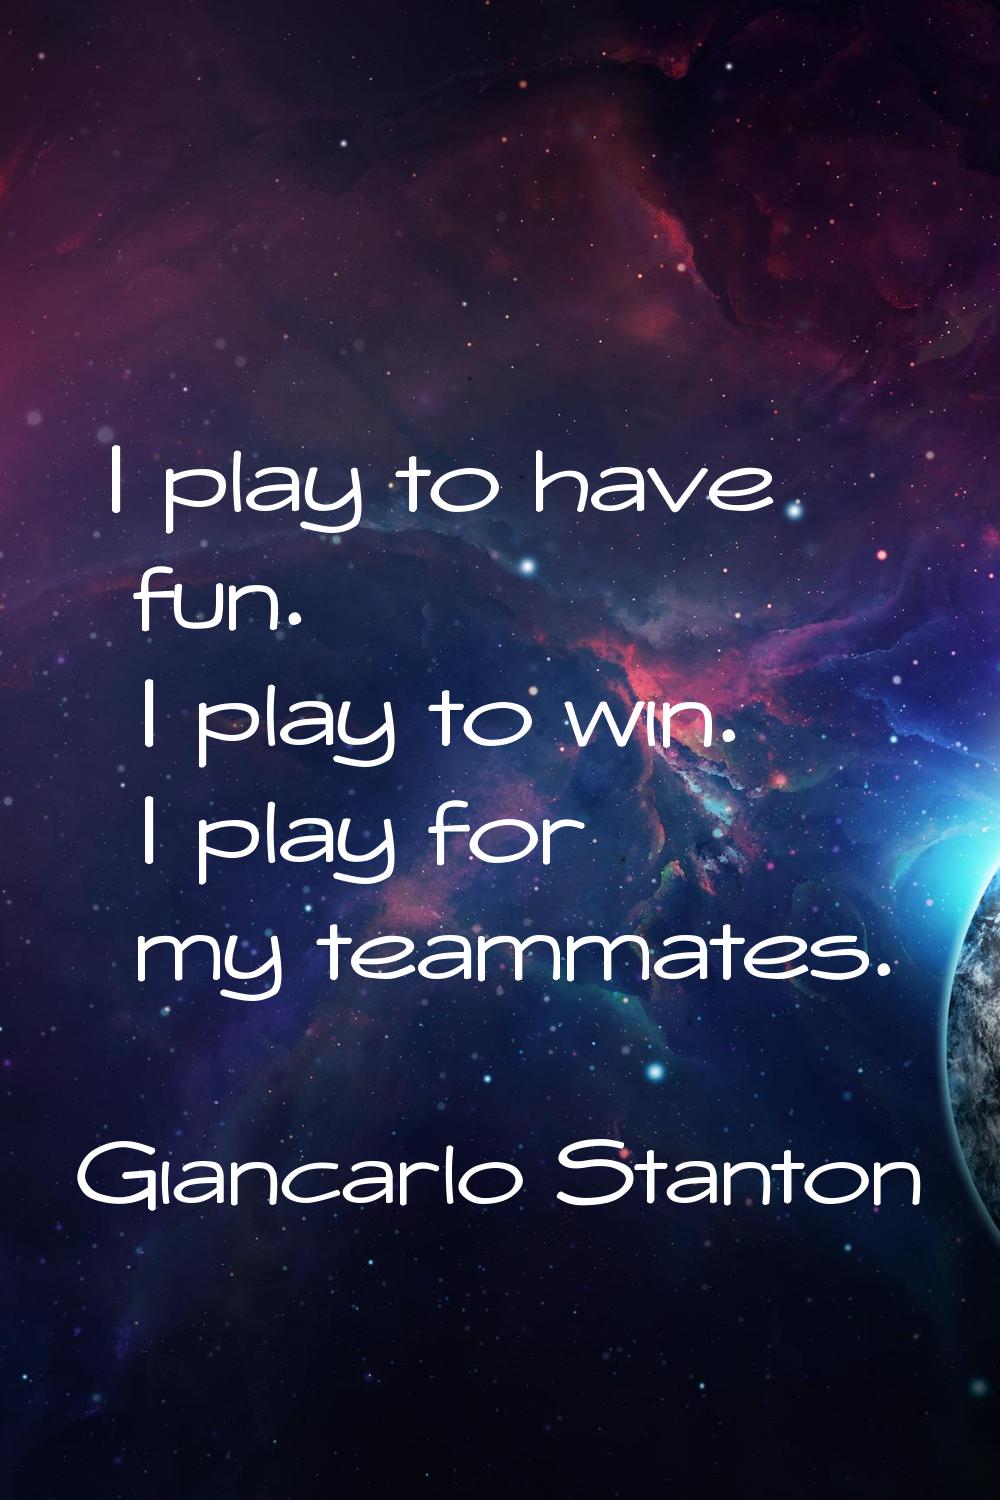 I play to have fun. I play to win. I play for my teammates.